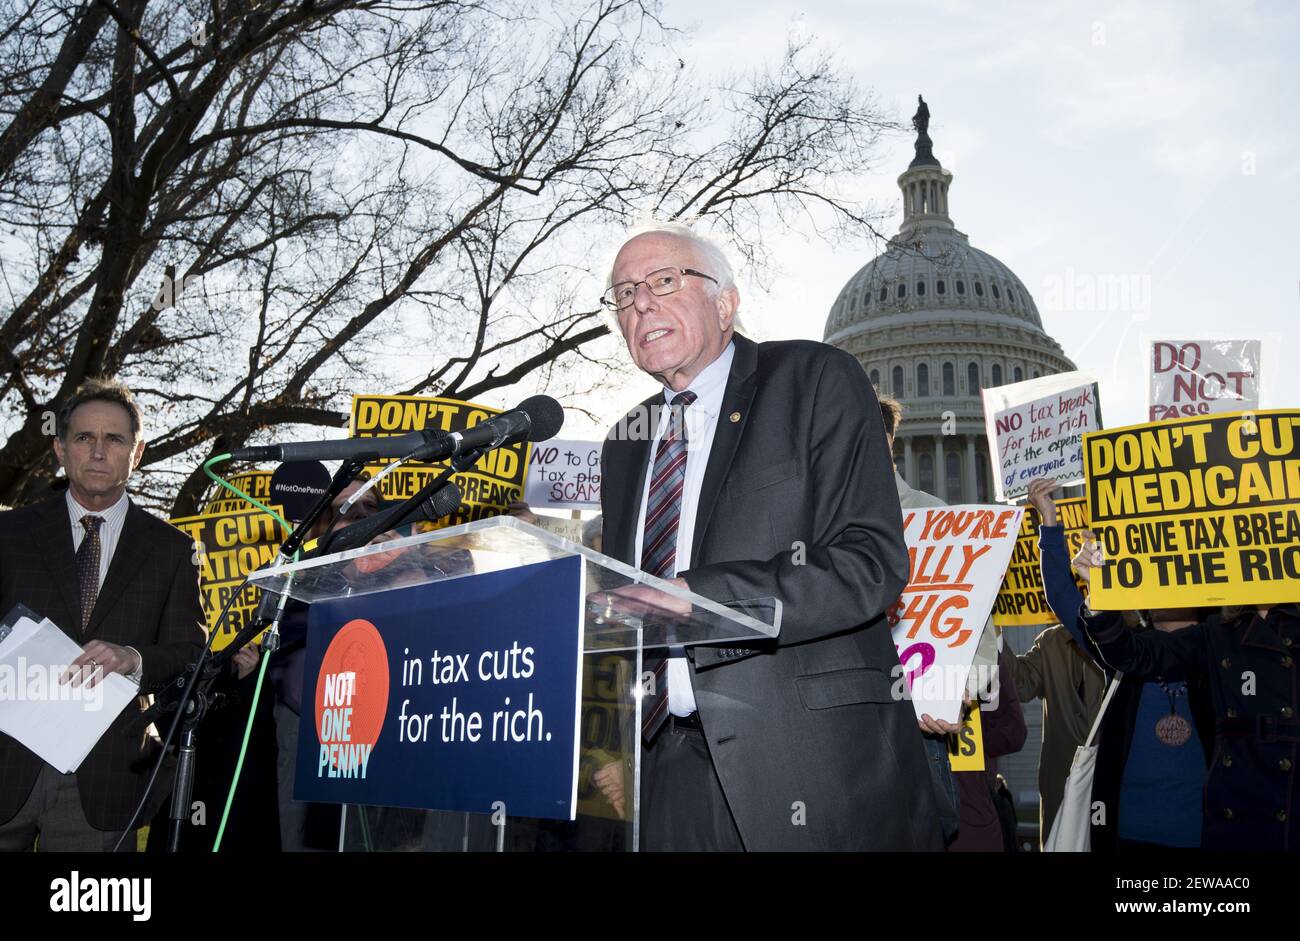 ESTADOS UNIDOS - 30 DE NOVIEMBRE: El Senador Bernie Sanders, I-VT., se pronuncia en contra del plan de reforma tributaria durante una manifestación fuera del Capitolio el jueves 30 de noviembre de 2017. (Foto de Bill Clark/CQ Roll Call) Foto de stock